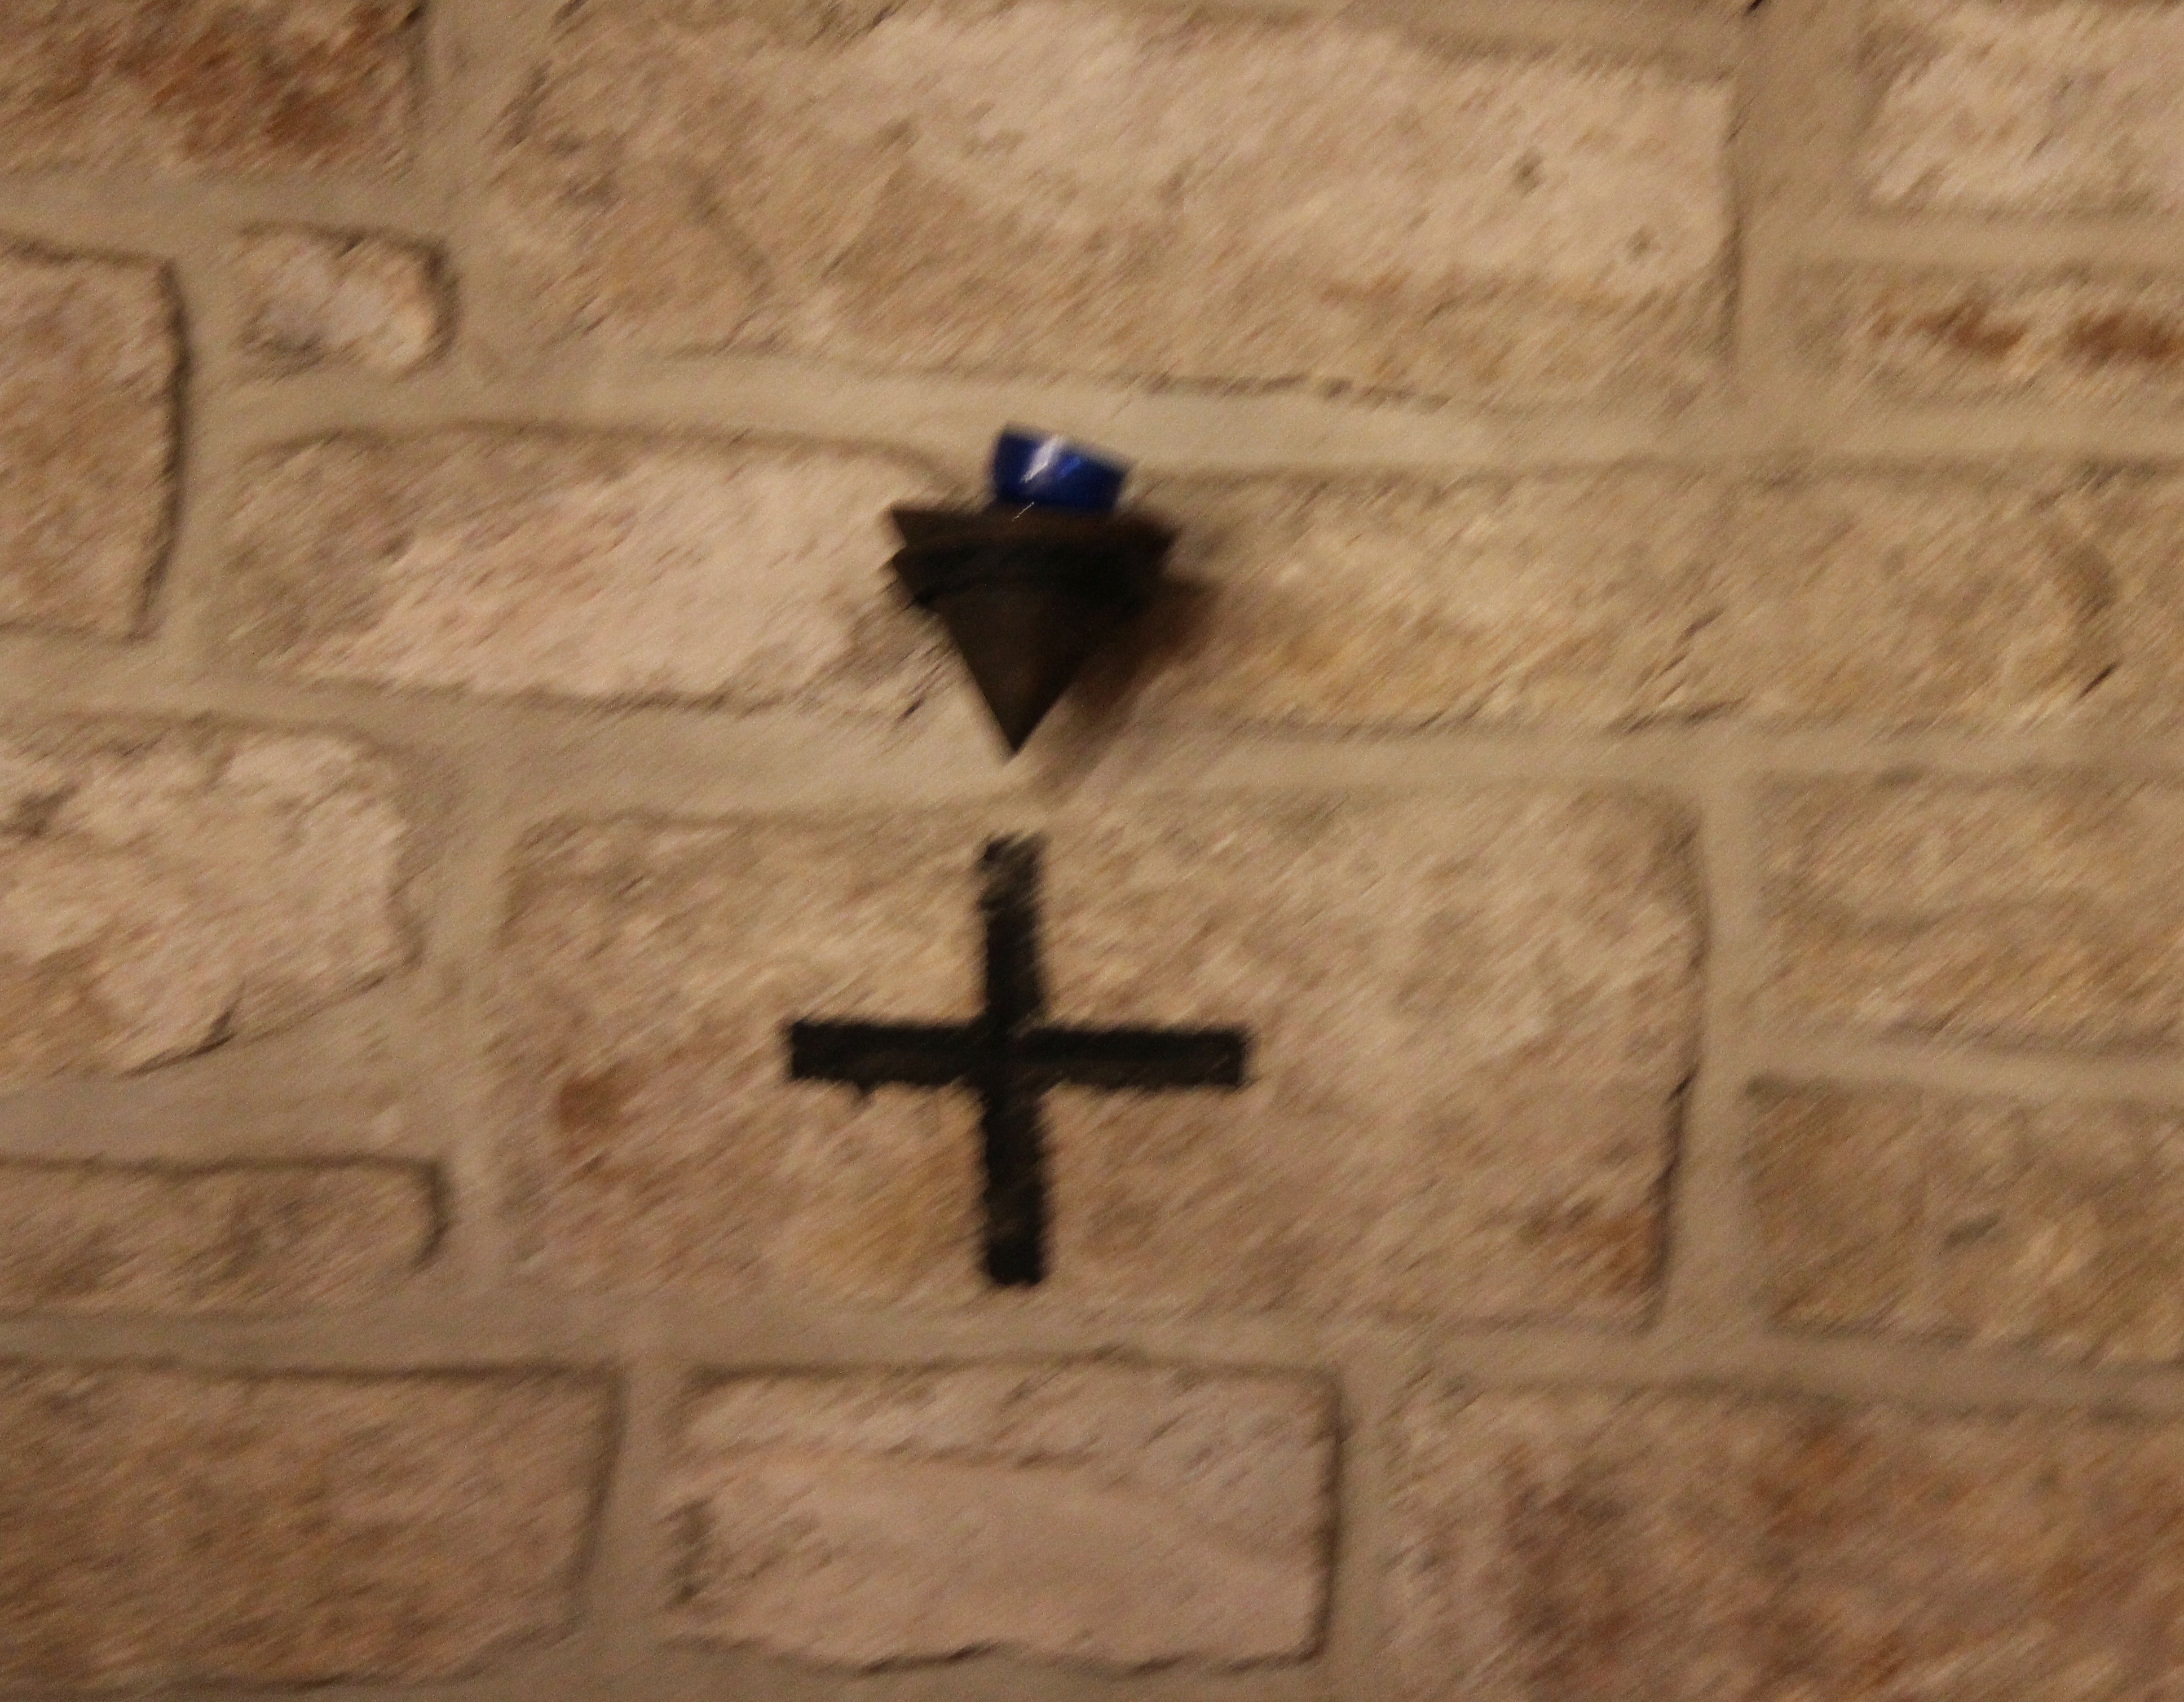 Croix gravée dans la pierre avec, à proximité, un petit récipient de forme conique (destiné à recevoir une lumière, une décoration... ?